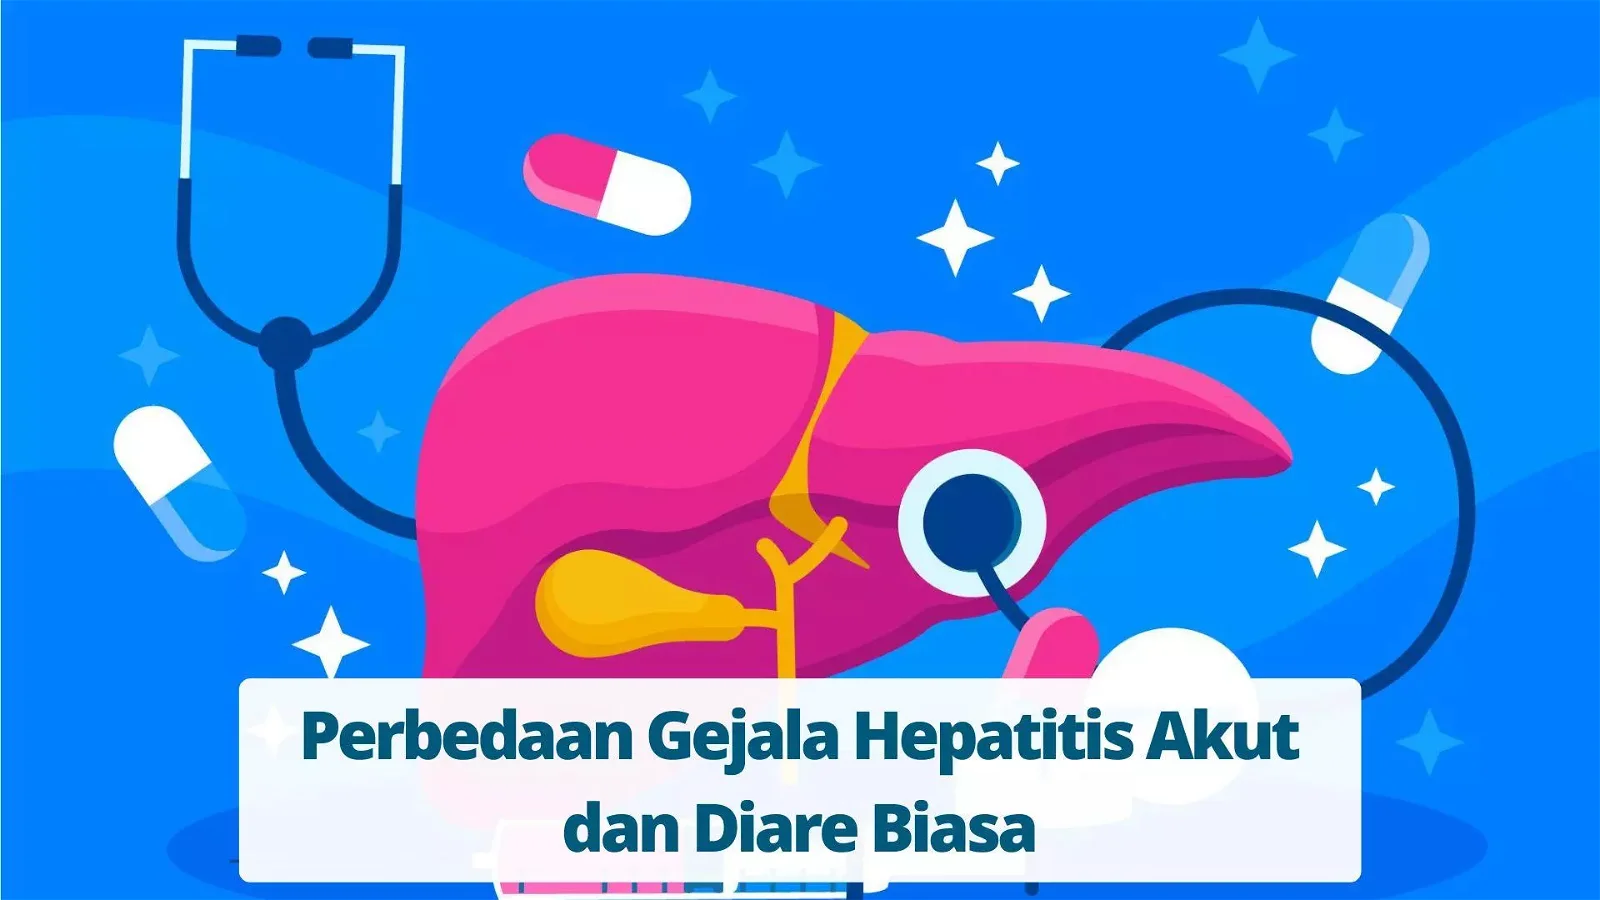 Perbedaan Gejala Hepatitis Akut dan Diare Biasa